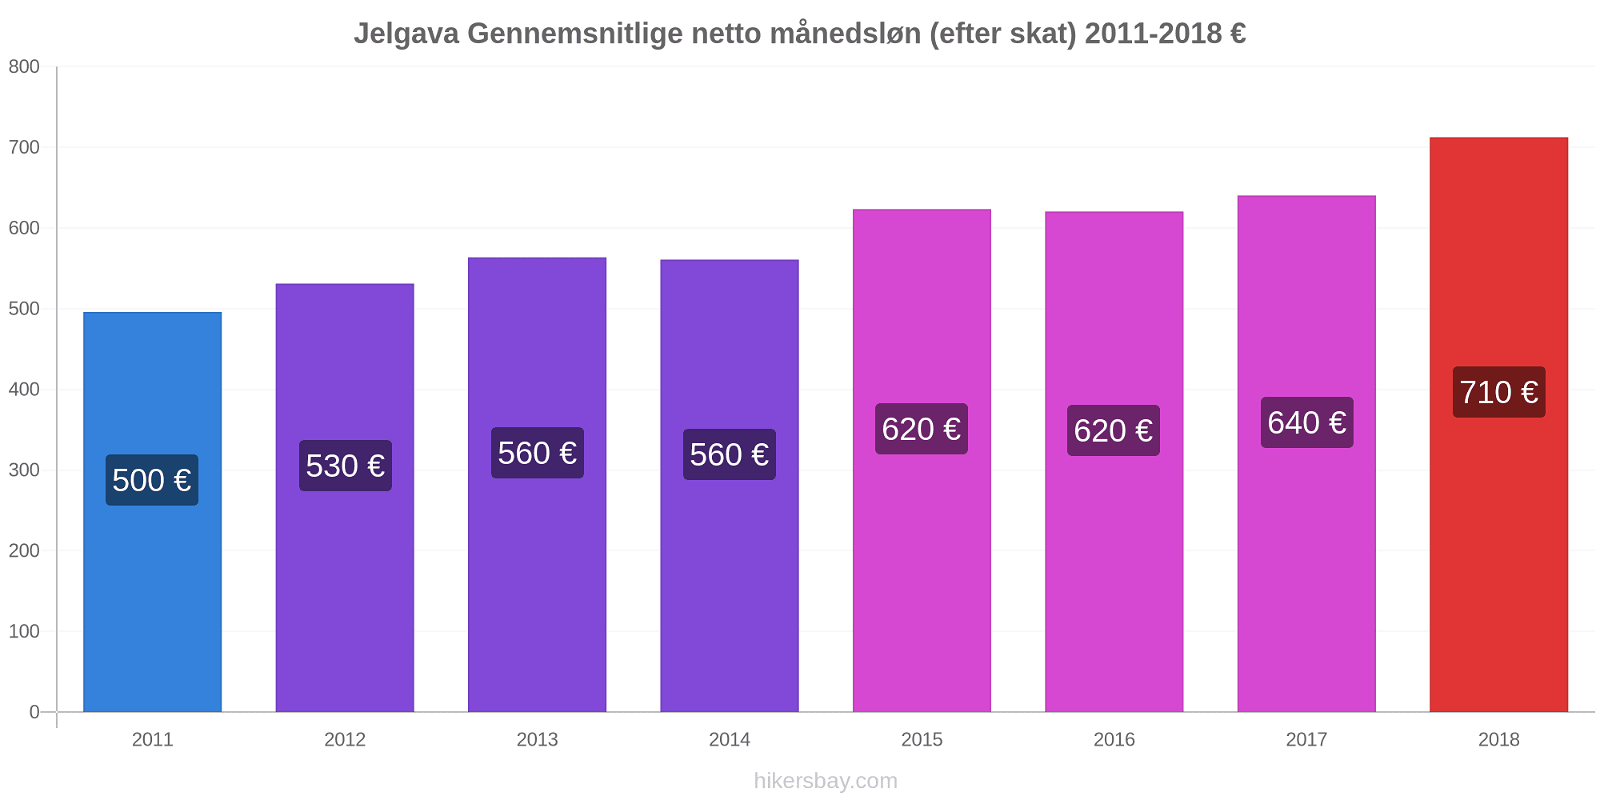 Jelgava prisændringer Gennemsnitlige netto månedsløn (efter skat) hikersbay.com